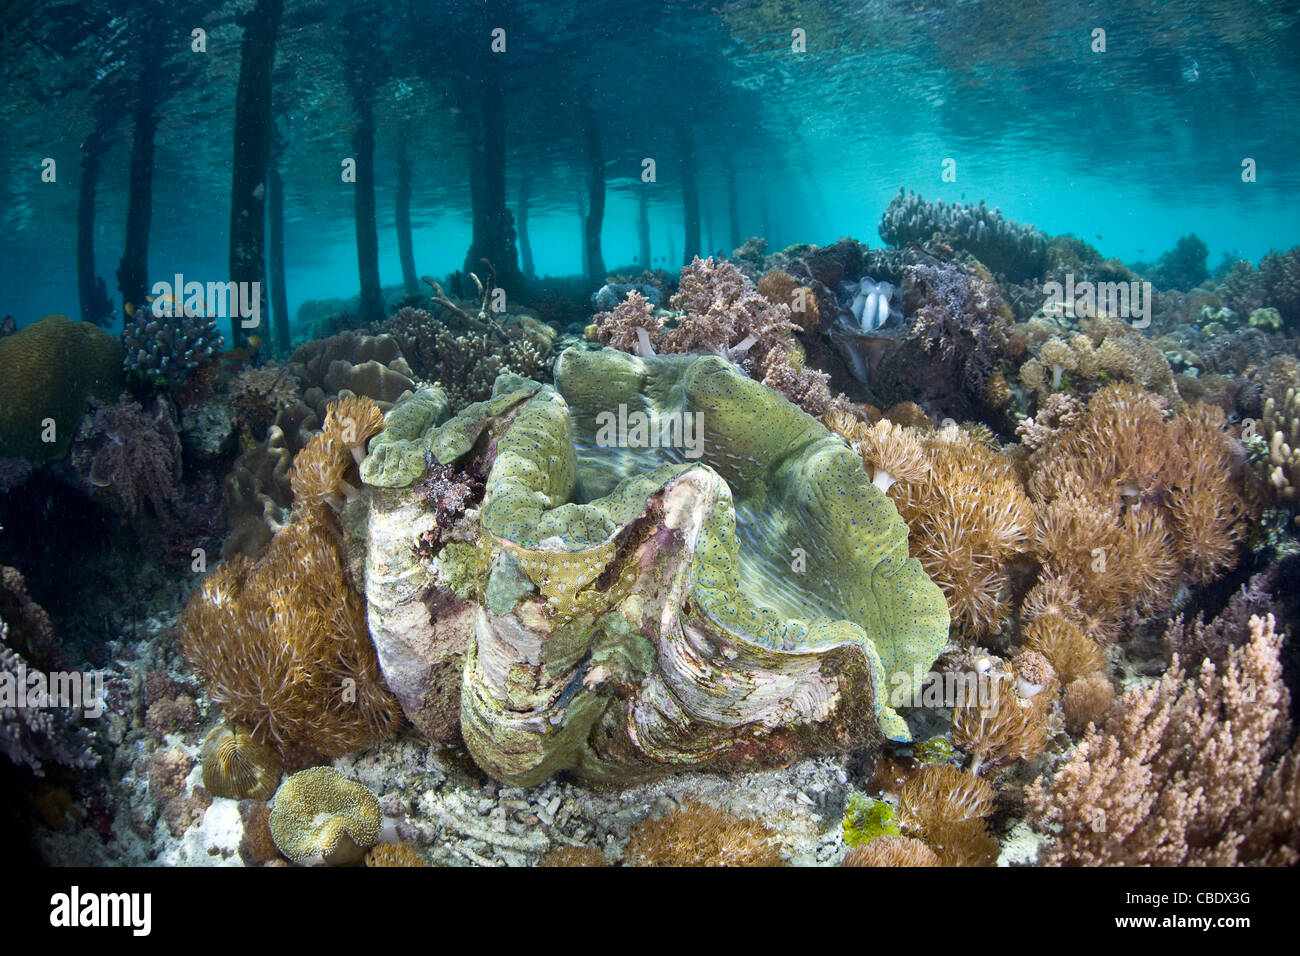 Eine große Riesenmuschel Tridacna Gigas, wächst in einem flachen Korallen Garten neben einem Pier. Dies ist eine vom Aussterben bedrohte Arten. Stockfoto